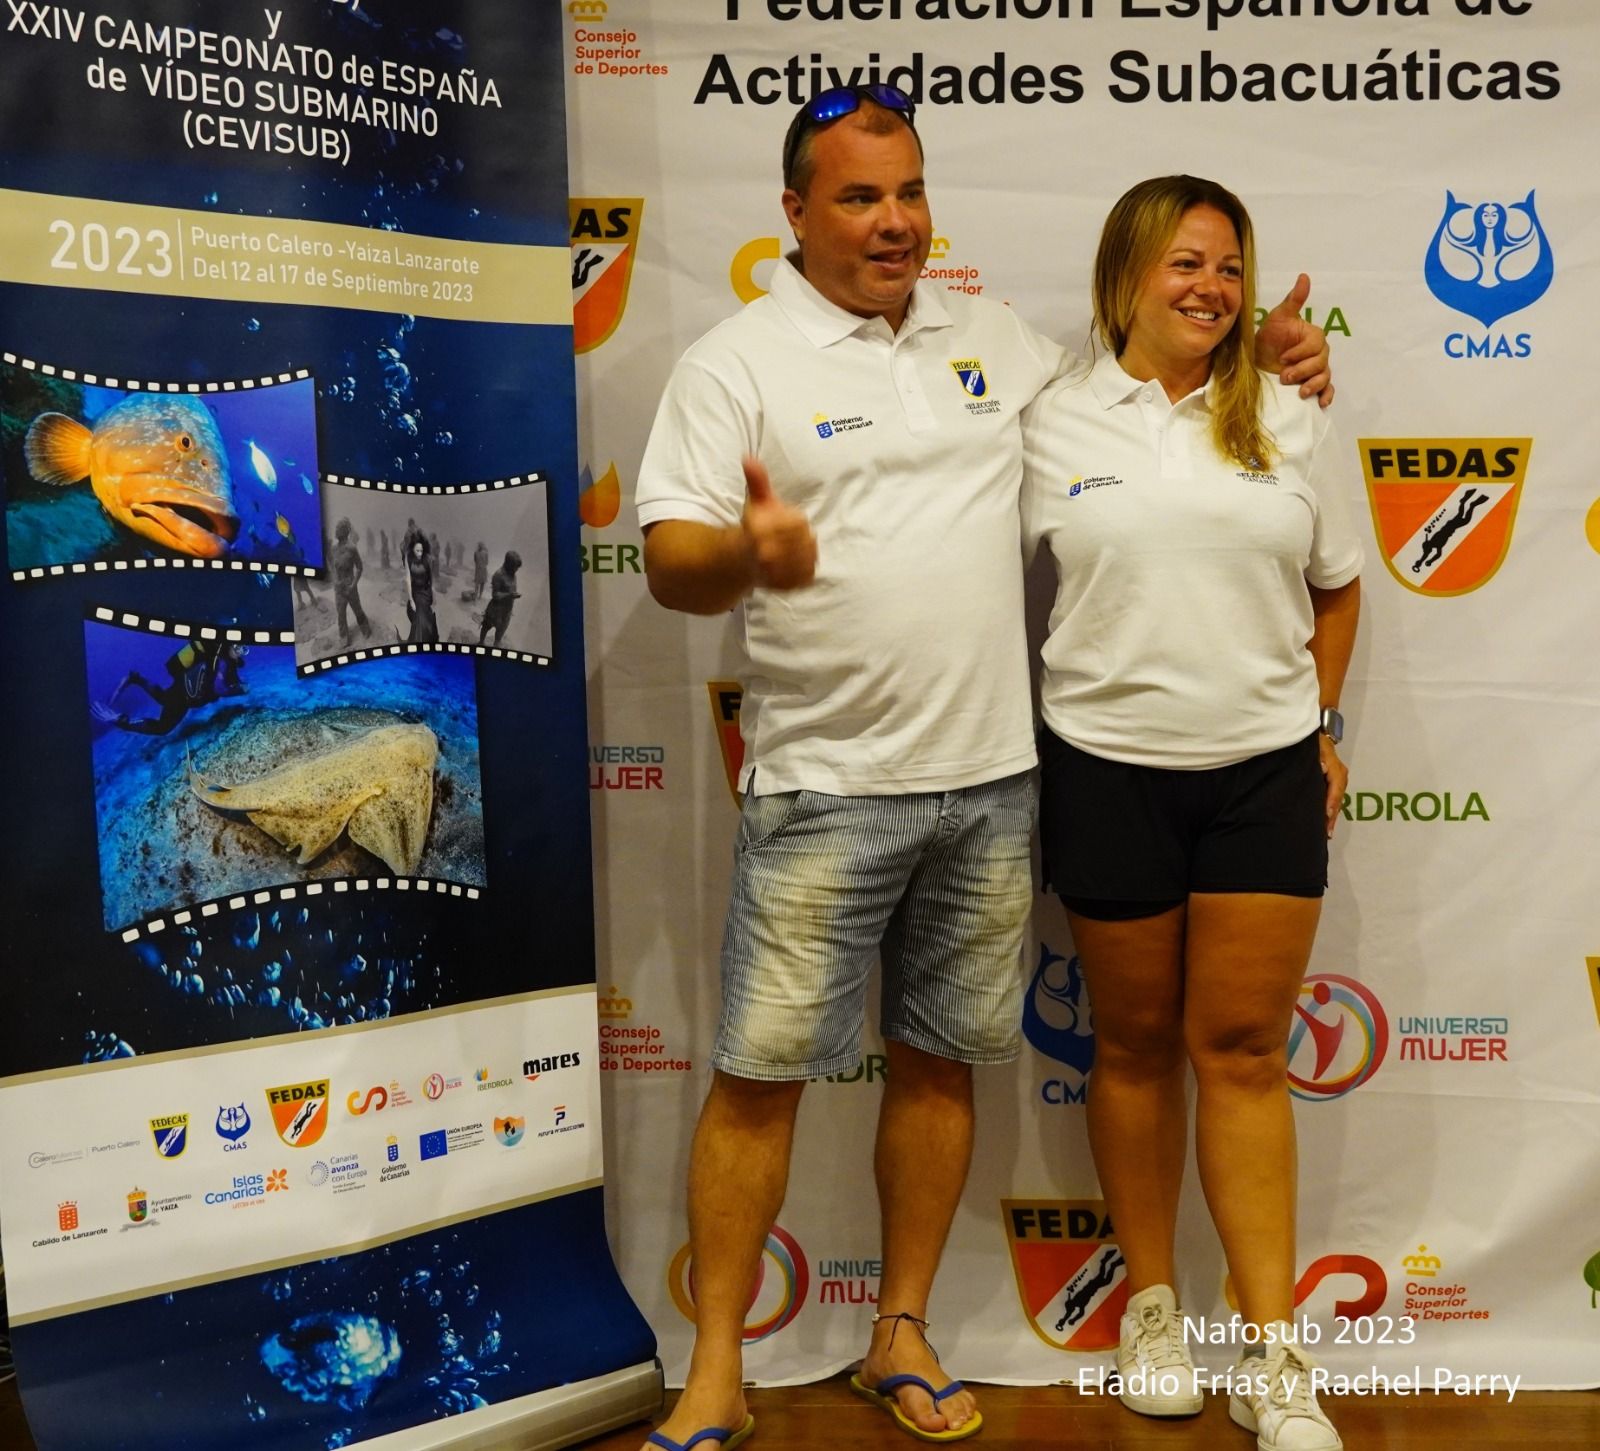 5º clasificado del Campeonato de España de Fotografía Submarina 2023: Eladio Frías y Rachel Parry